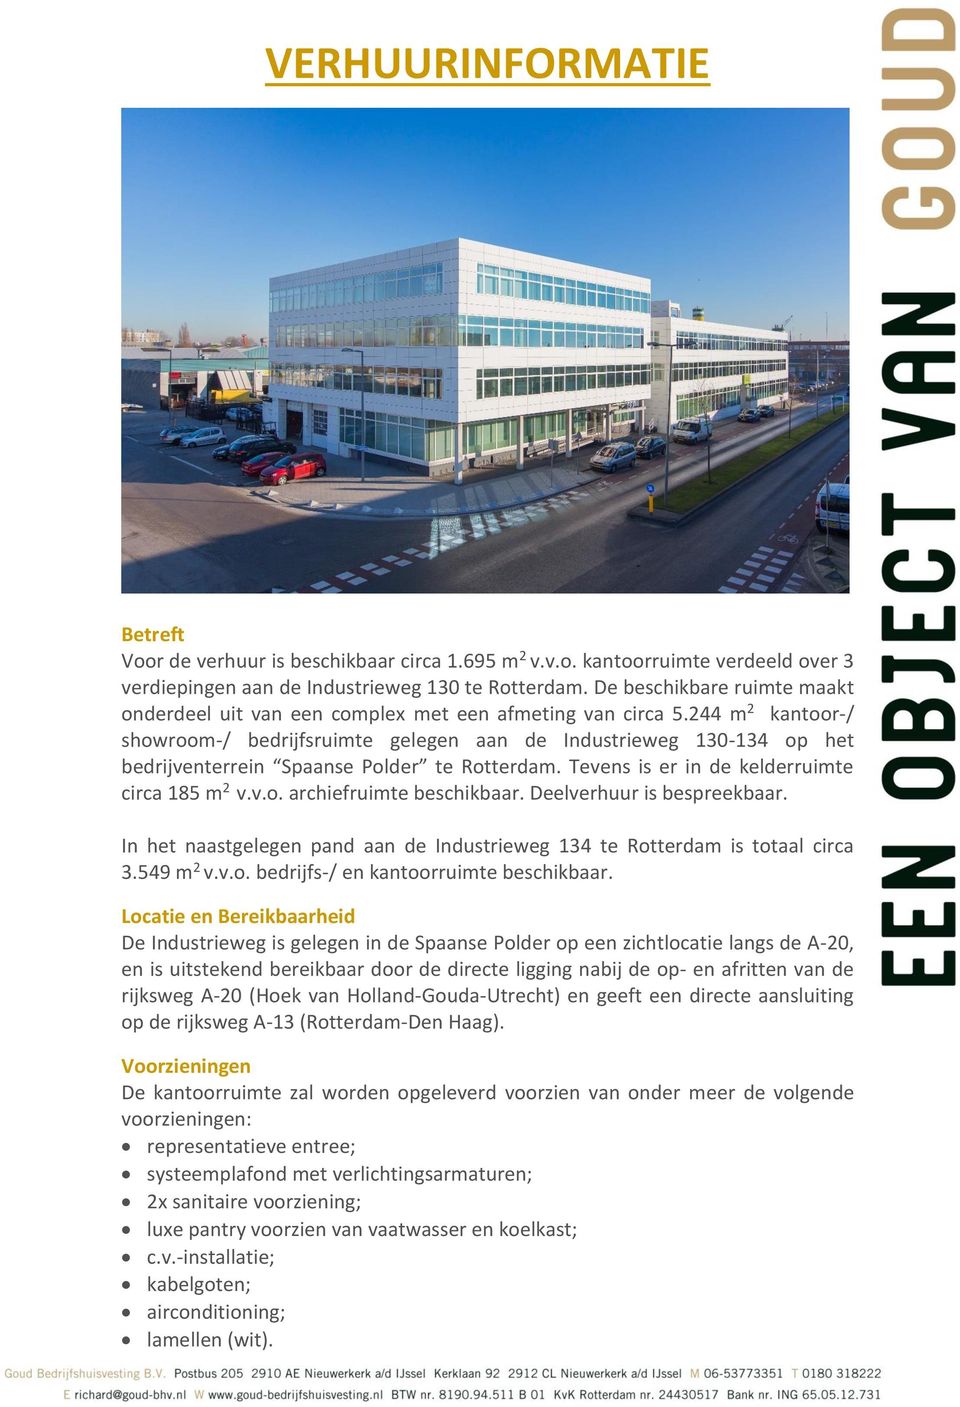 244 m 2 kantoor-/ showroom-/ bedrijfsruimte gelegen aan de Industrieweg 130-134 op het bedrijventerrein Spaanse Polder te Rotterdam. Tevens is er in de kelderruimte circa 185 m 2 v.v.o. archiefruimte beschikbaar.